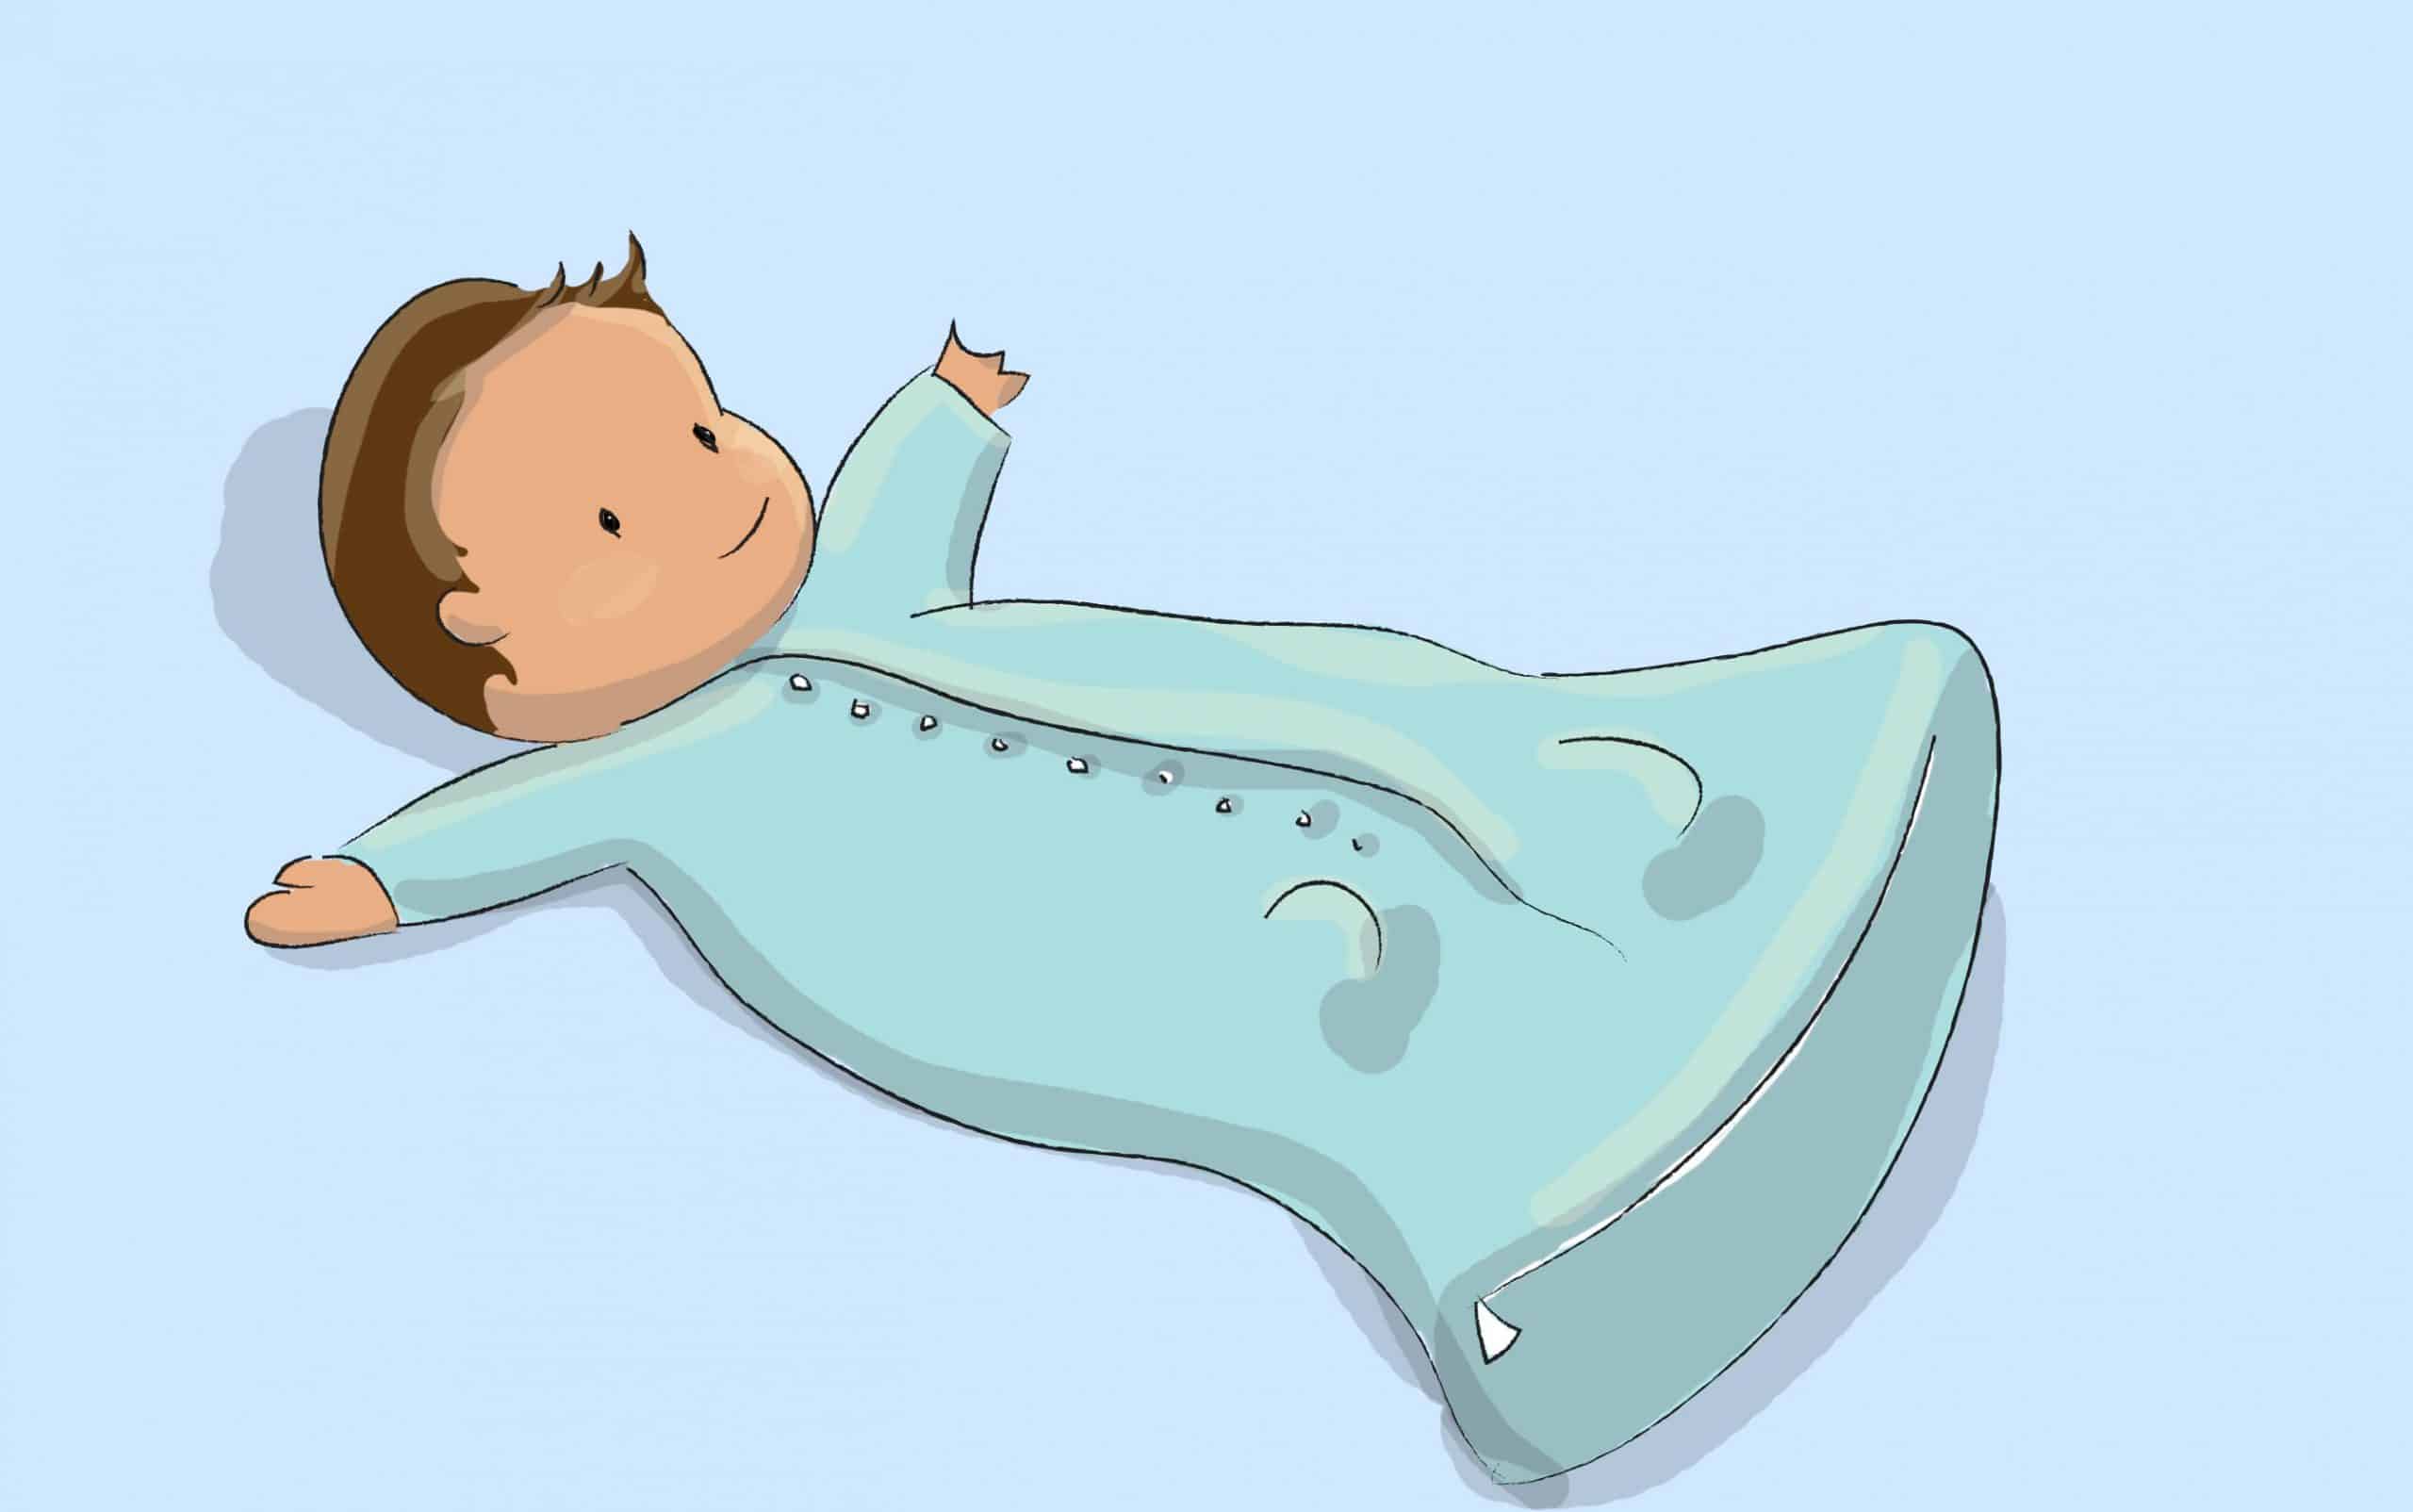 אם תינוקכם אינו אוהב את העיטוף, או שהוא כבר יכול להתהפך, אתם יכולים לנסות להרדימו בשק שינה המיועד לתינוקות